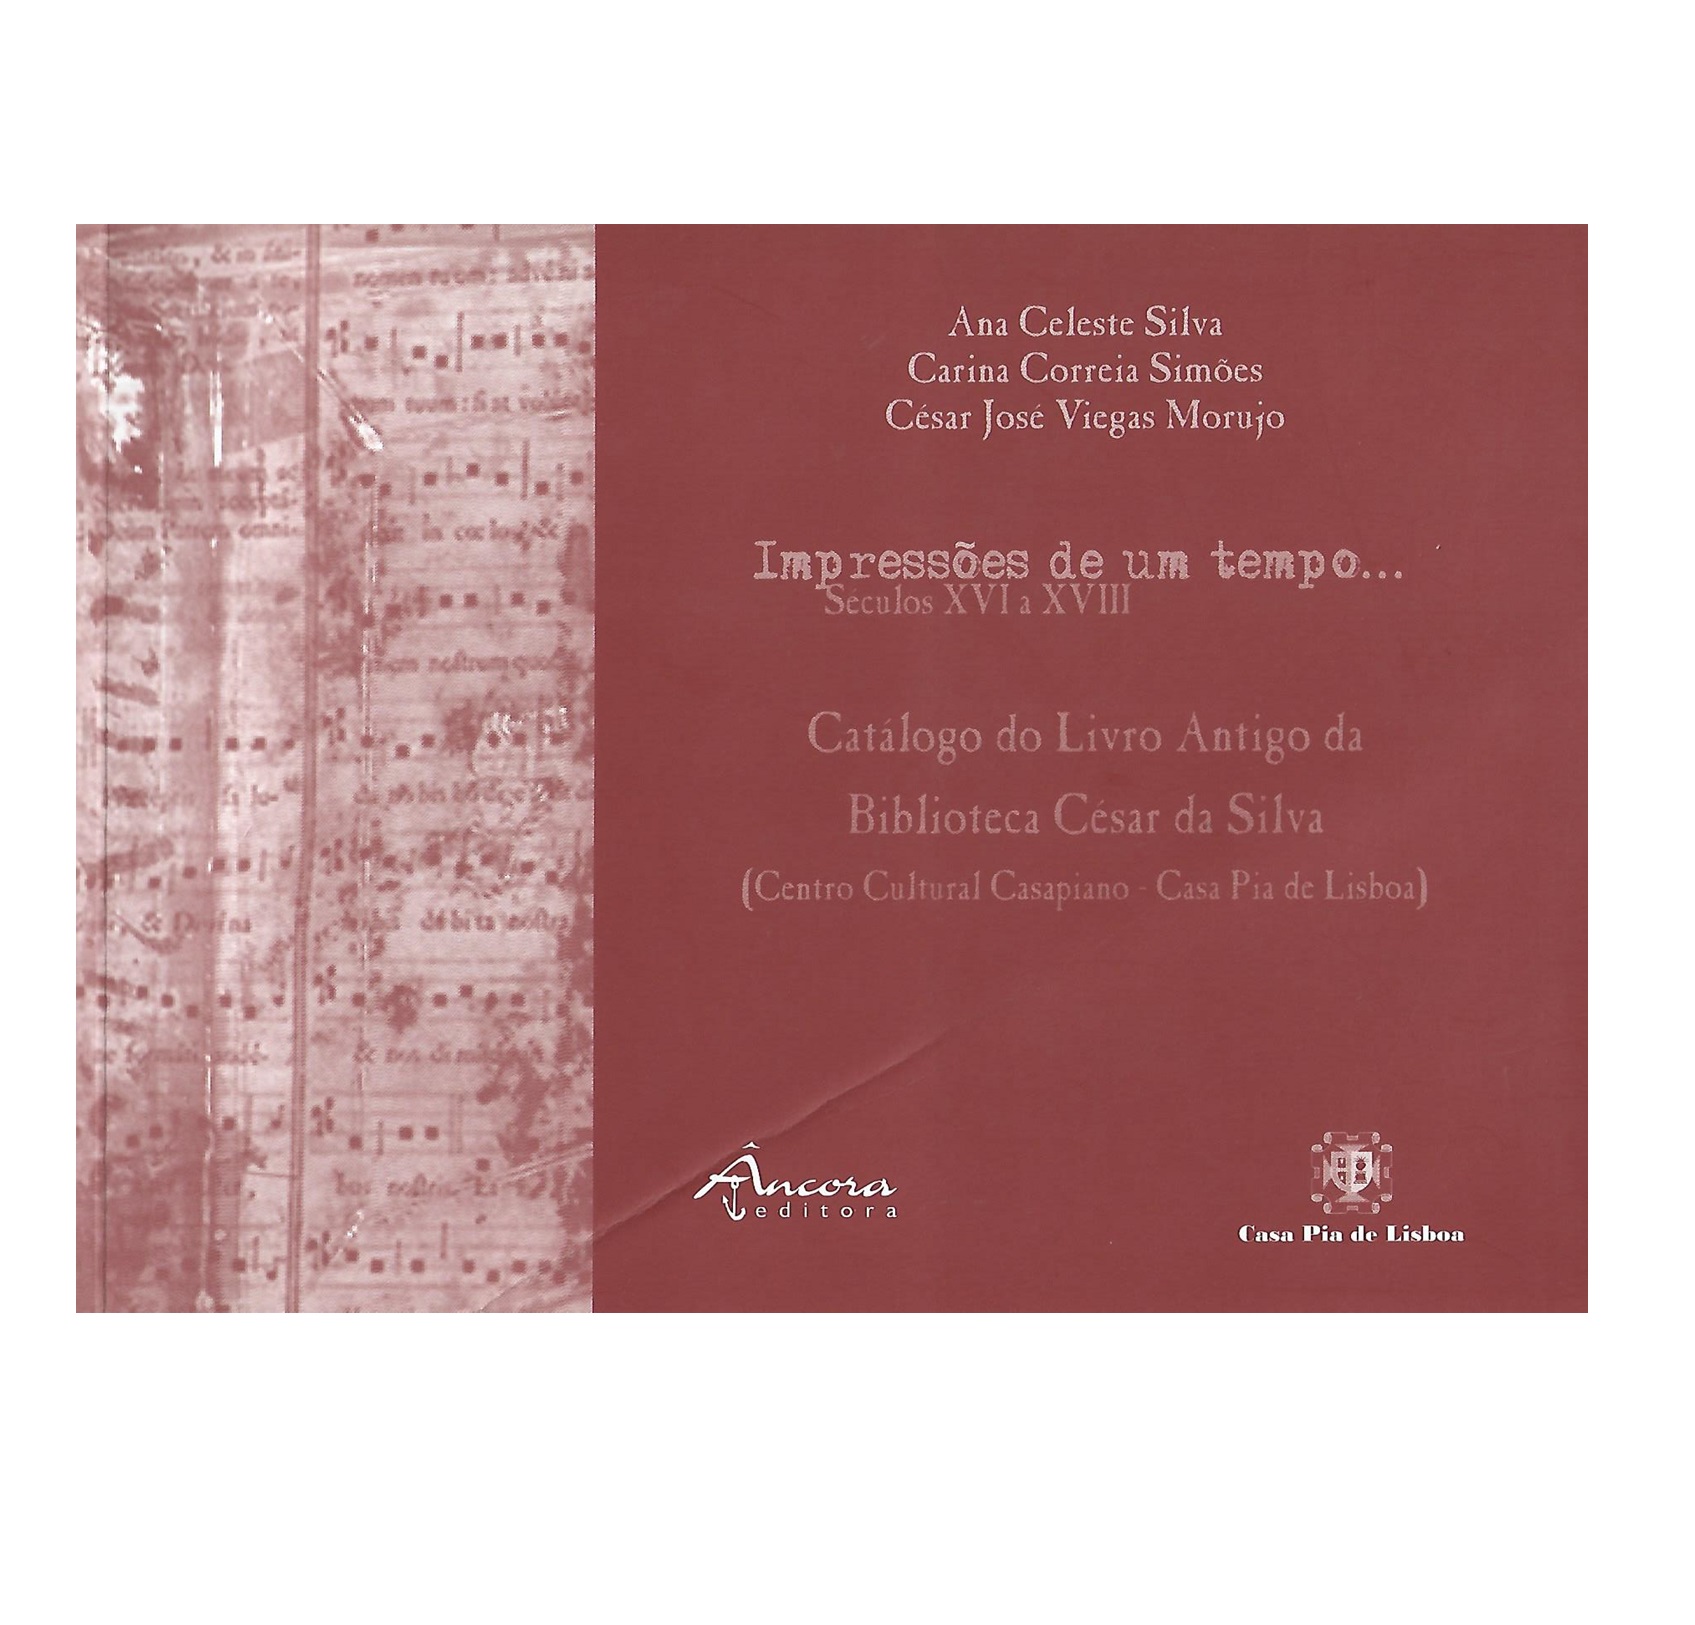 CATÁLOGO DO LIVRO ANTIGO DA BIBLIOTECA CÉSAR DA SILVA (SÉCULOS XVI A XVIII)